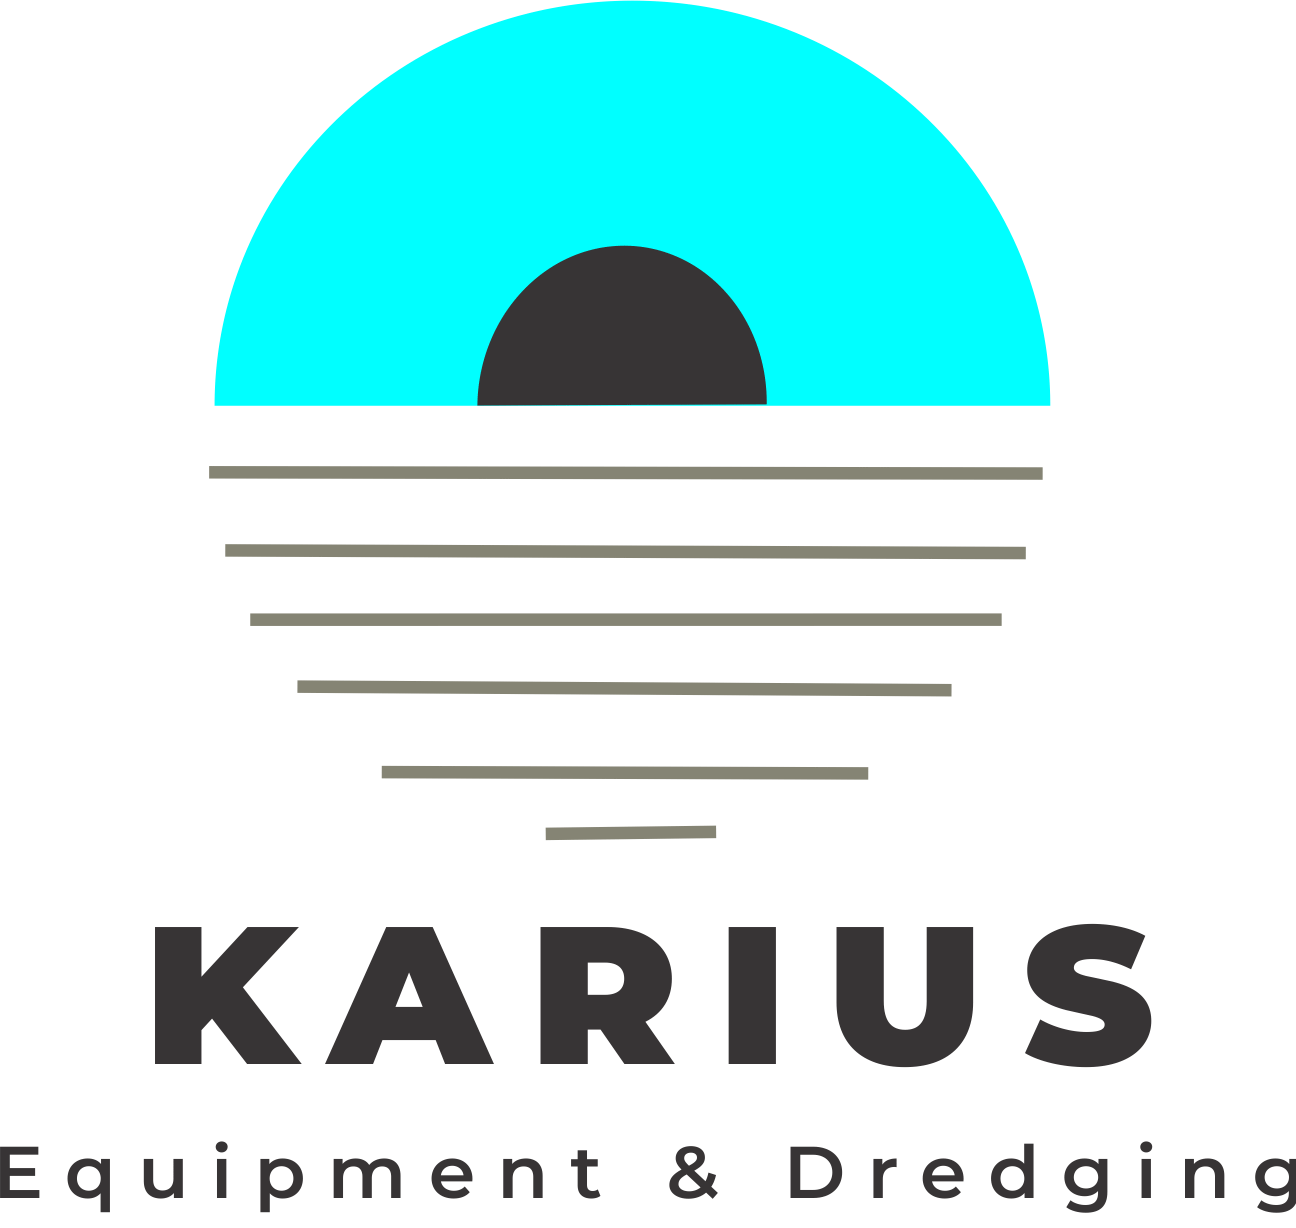 Karius Equipment and Dredging